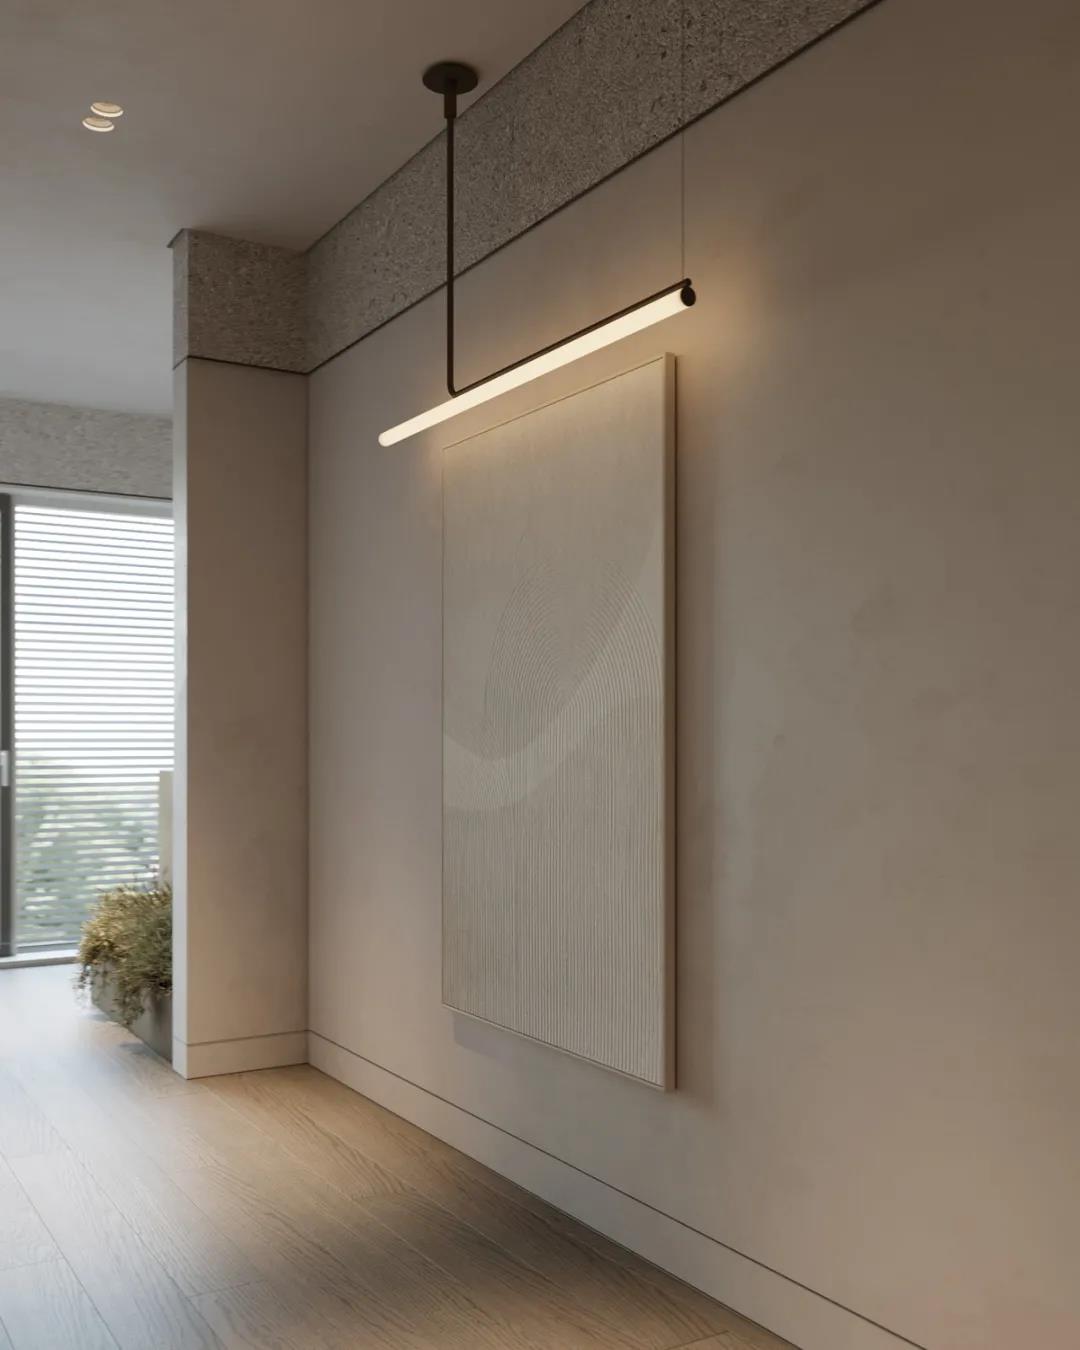 家居灯光设计,瑞士日内瓦室内暖光源灯光设计,灯光方案